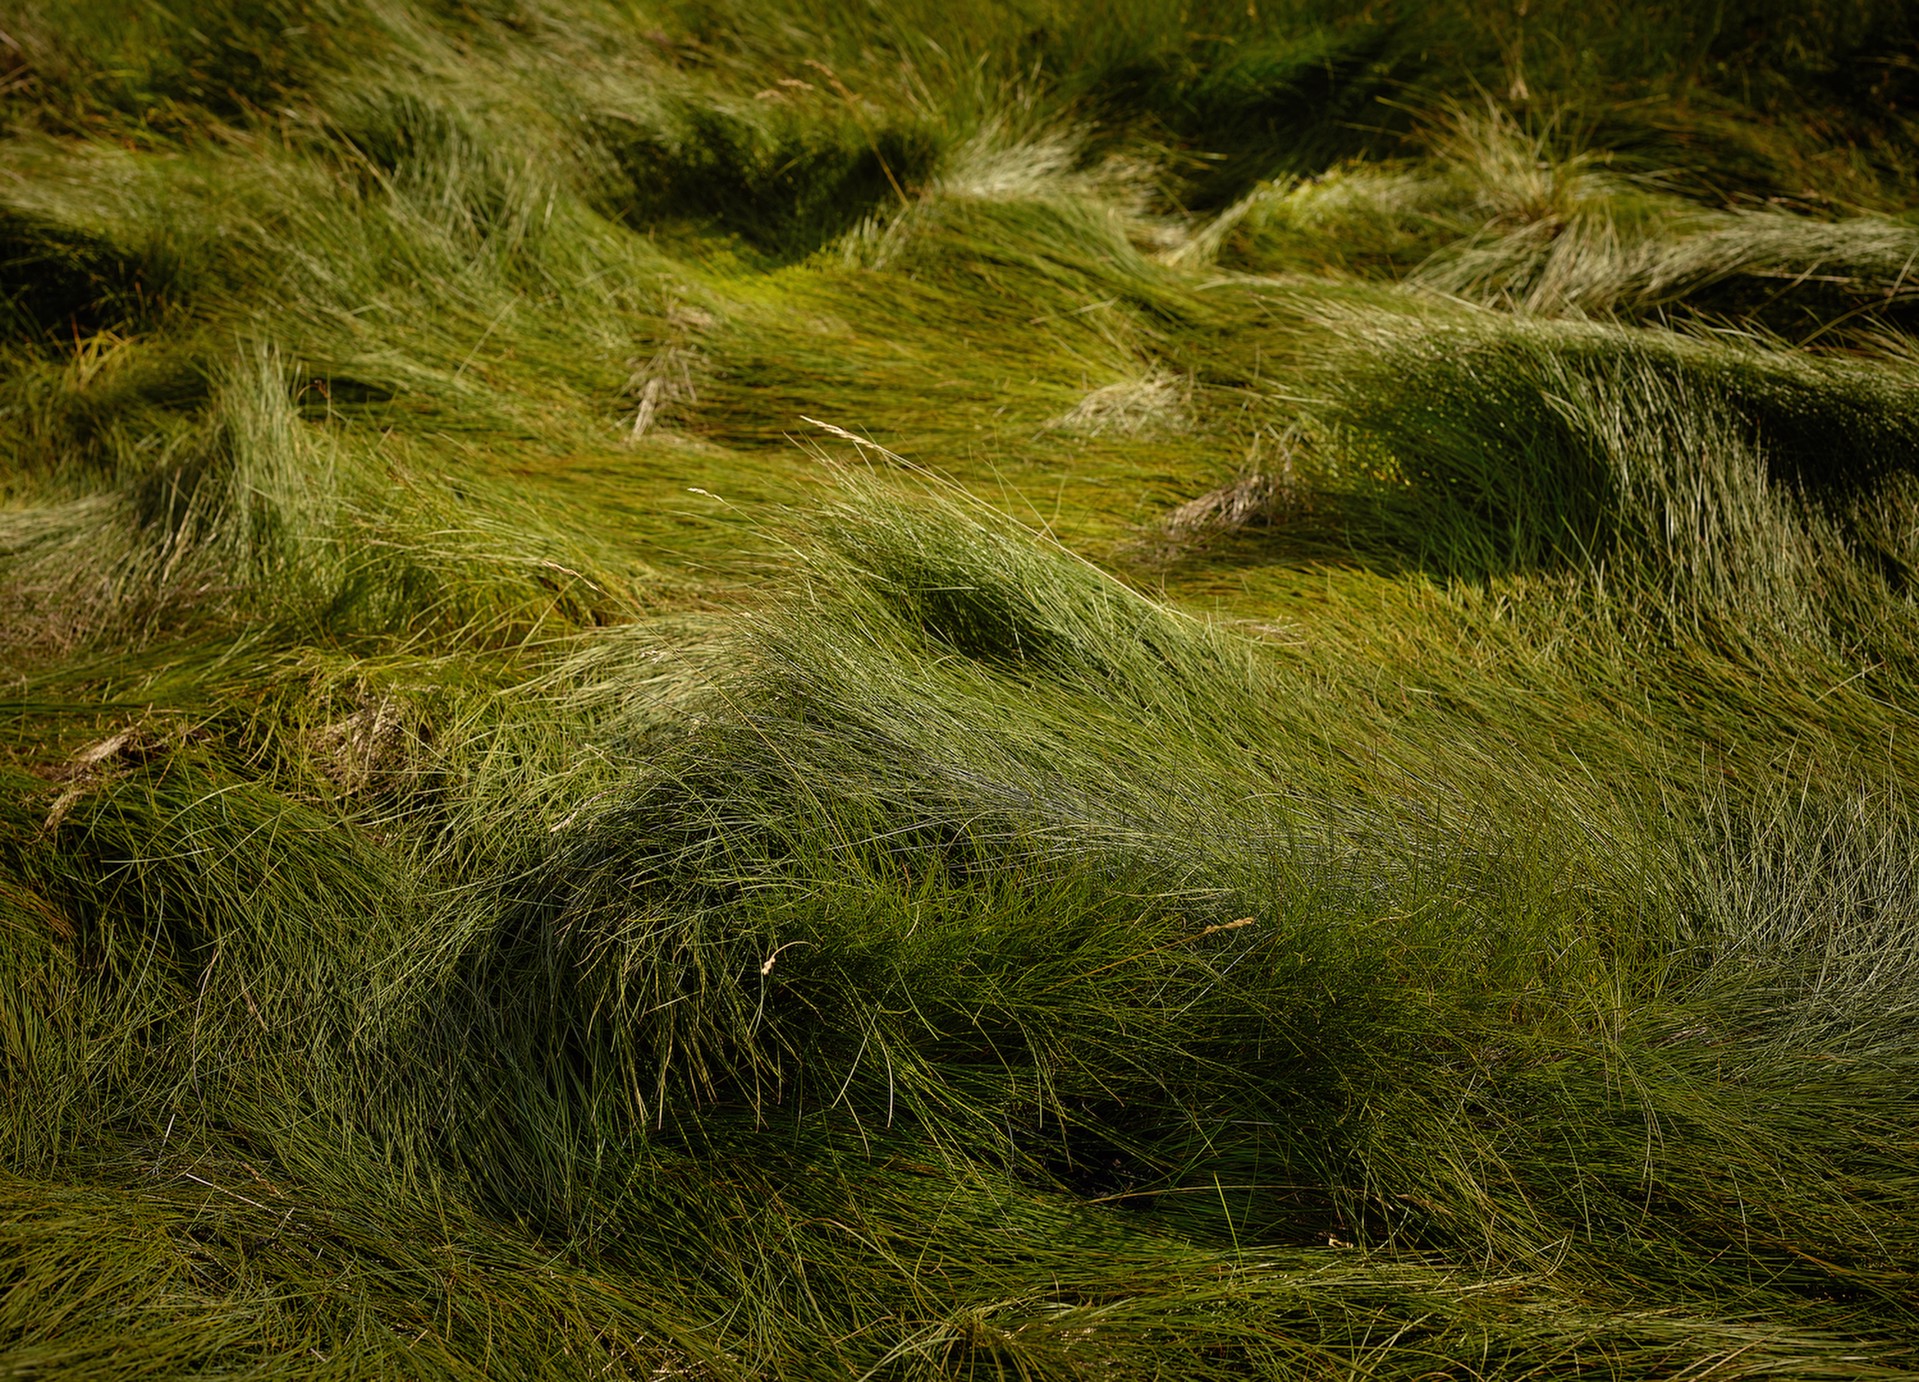 Sheep Bed, Lofoten Islands, Norway by R. J. Kern